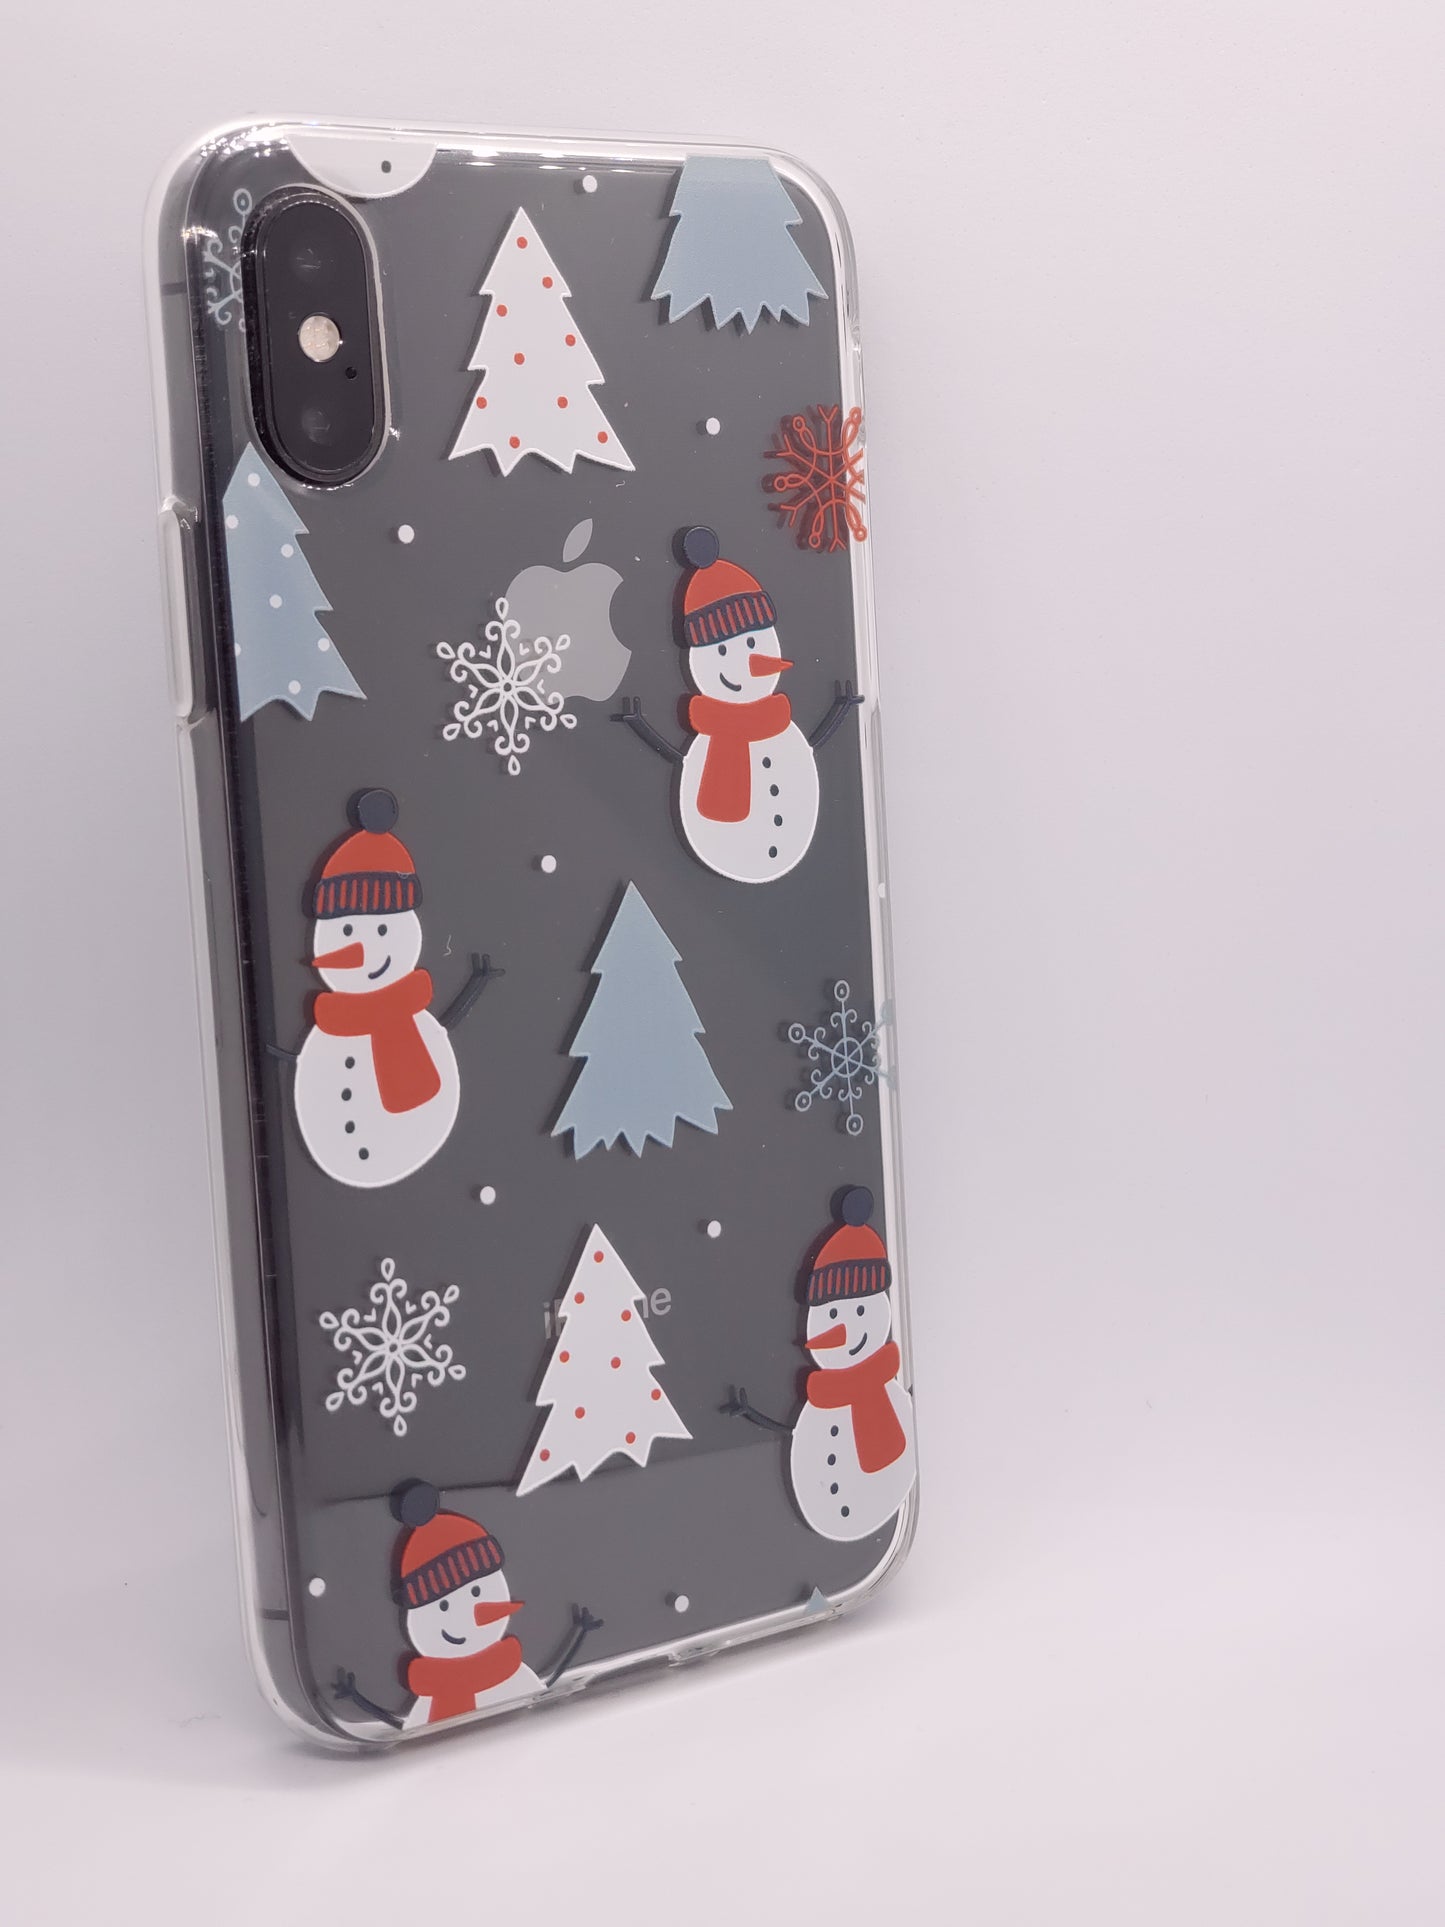 Funda transparente para iPhone Hombre de nieve navideño